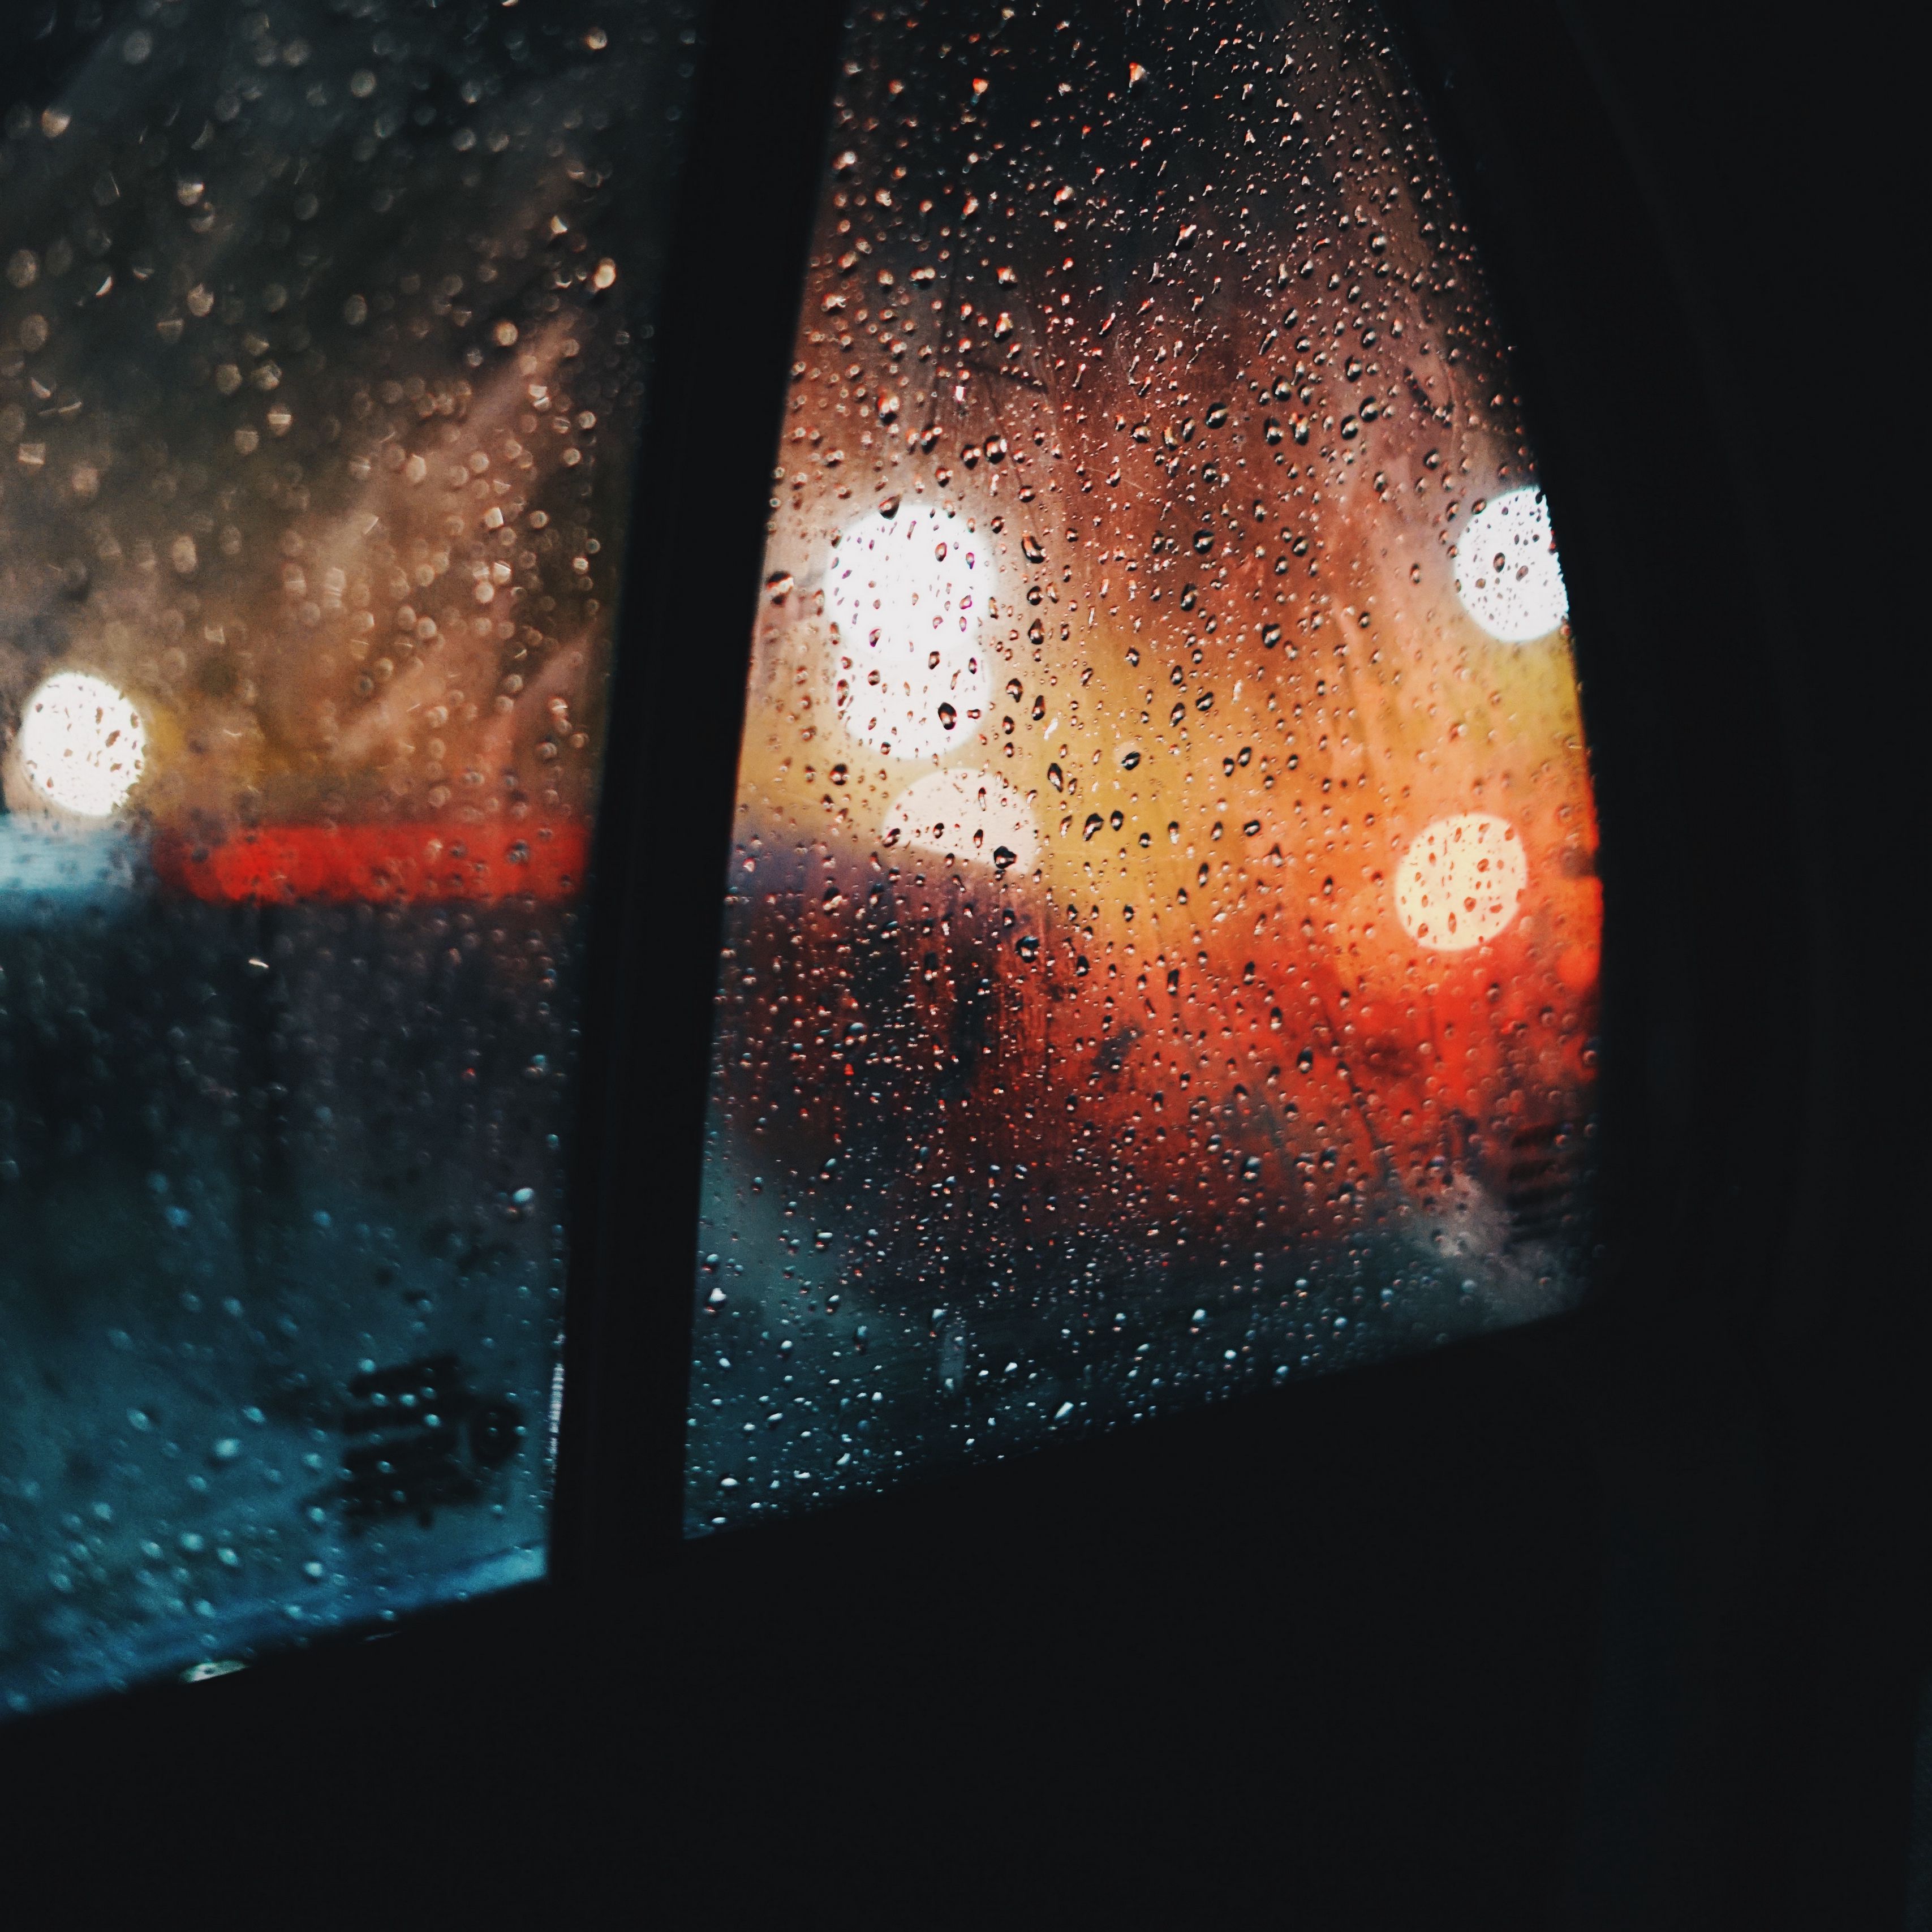 Ilgiz за окном дождь